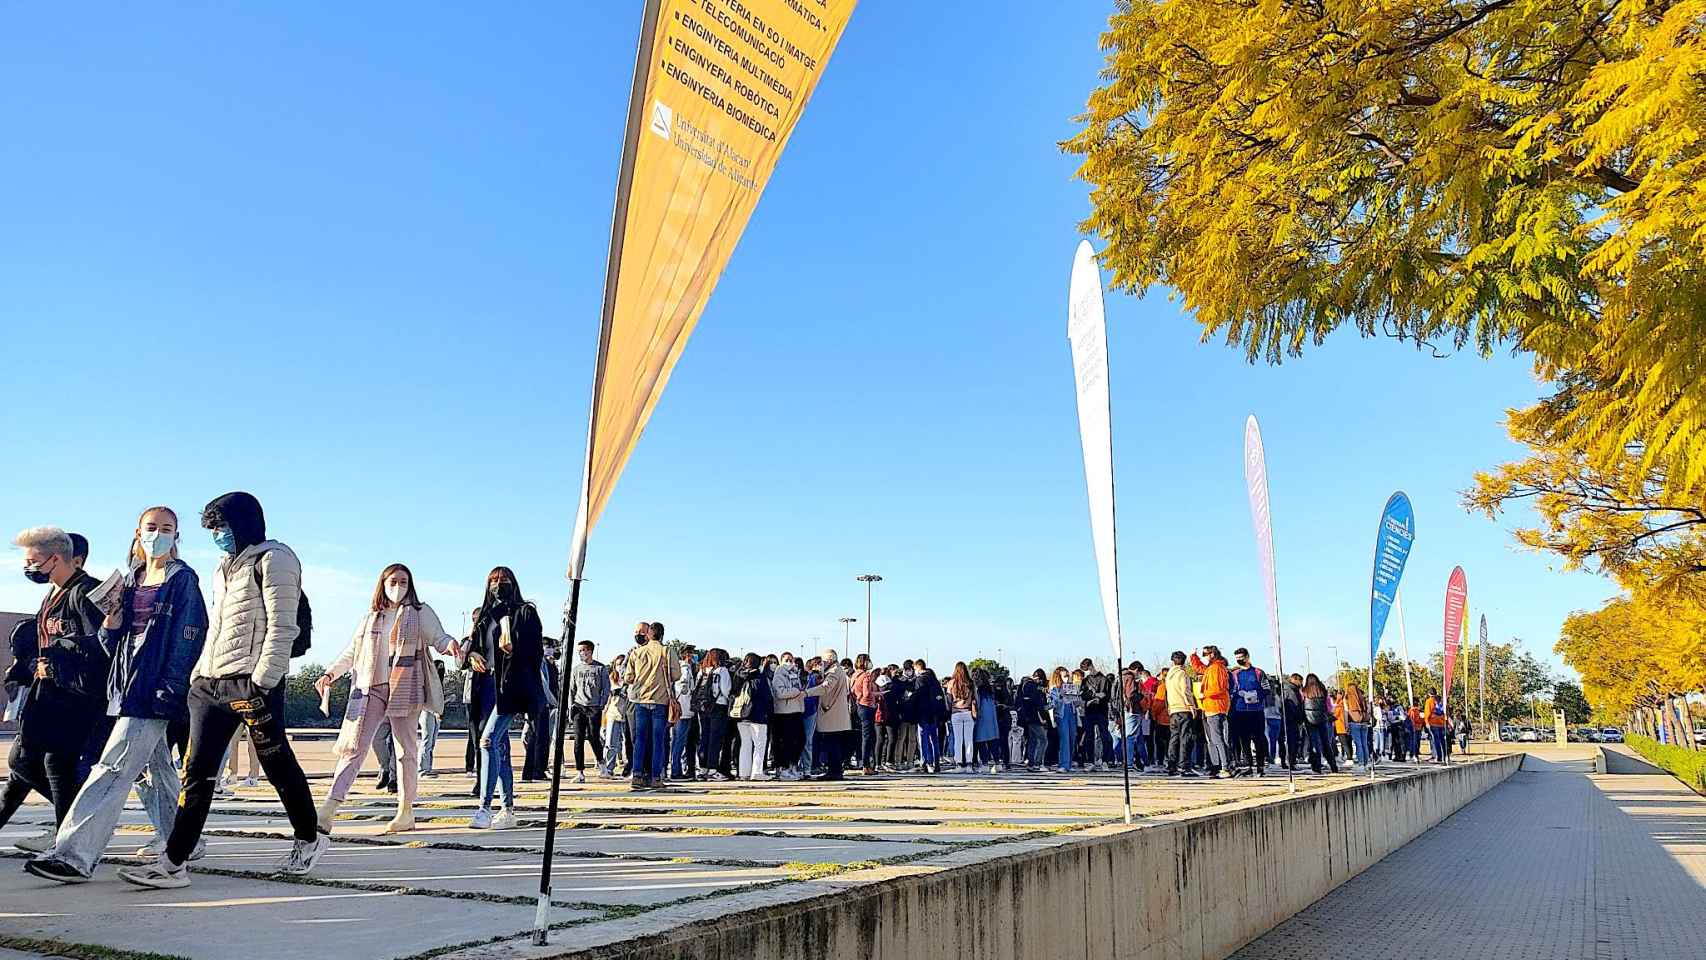 Las universidades, como la de Alicante en la imagen, recibirán este lunes más de 122.000 estudiantes.